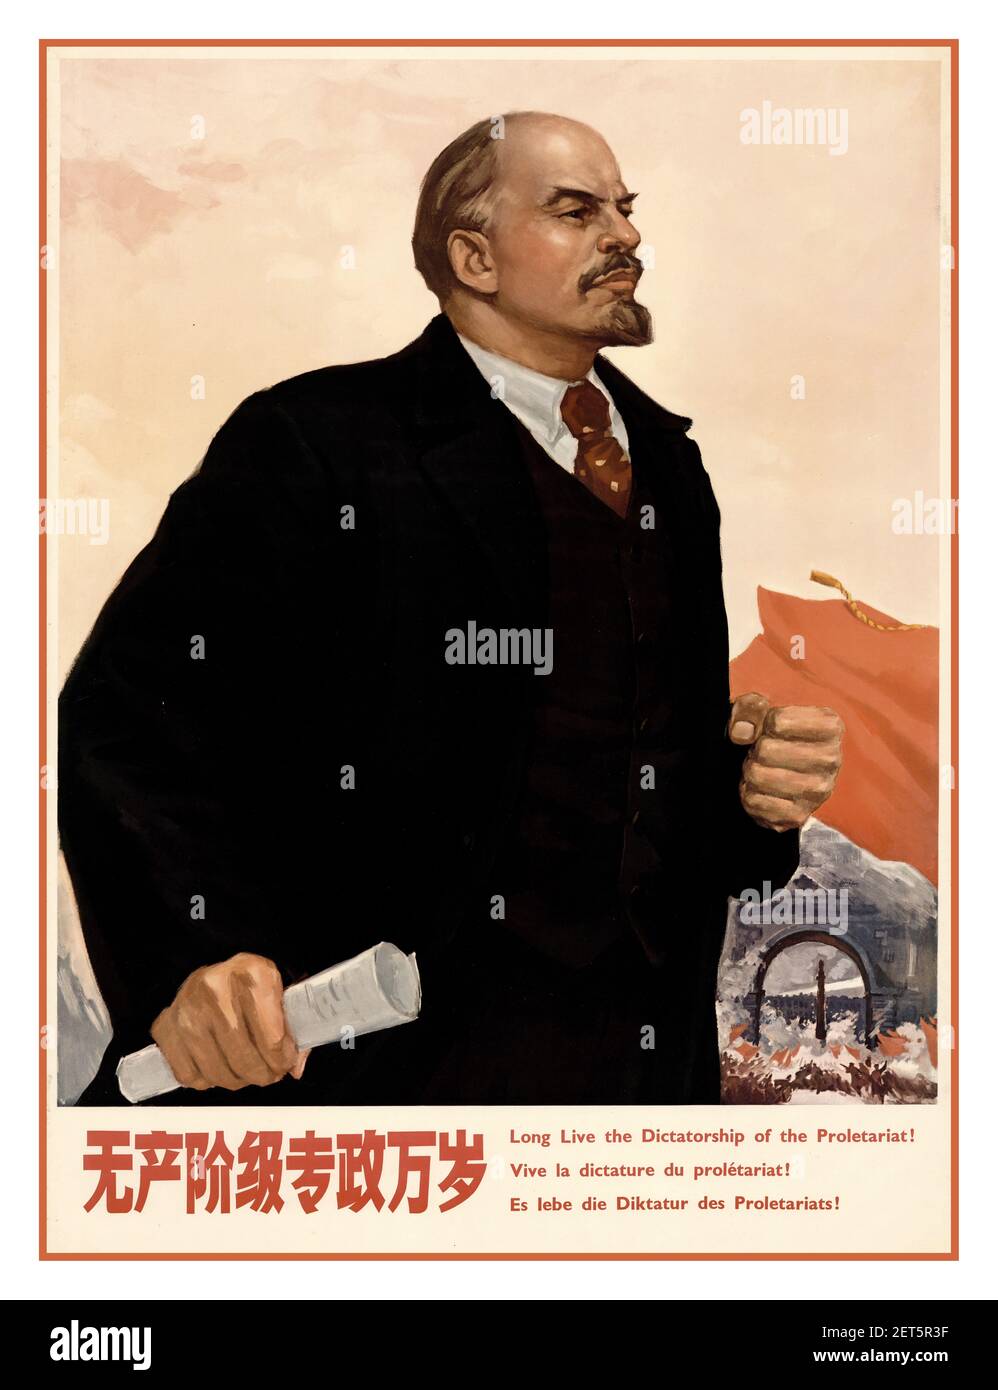 Affiche de propagande chinoise des années 1980..par exemple illustrant - Lénine - « vive la dictature du prolétariat » ! Chine communiste 1986. Banque D'Images